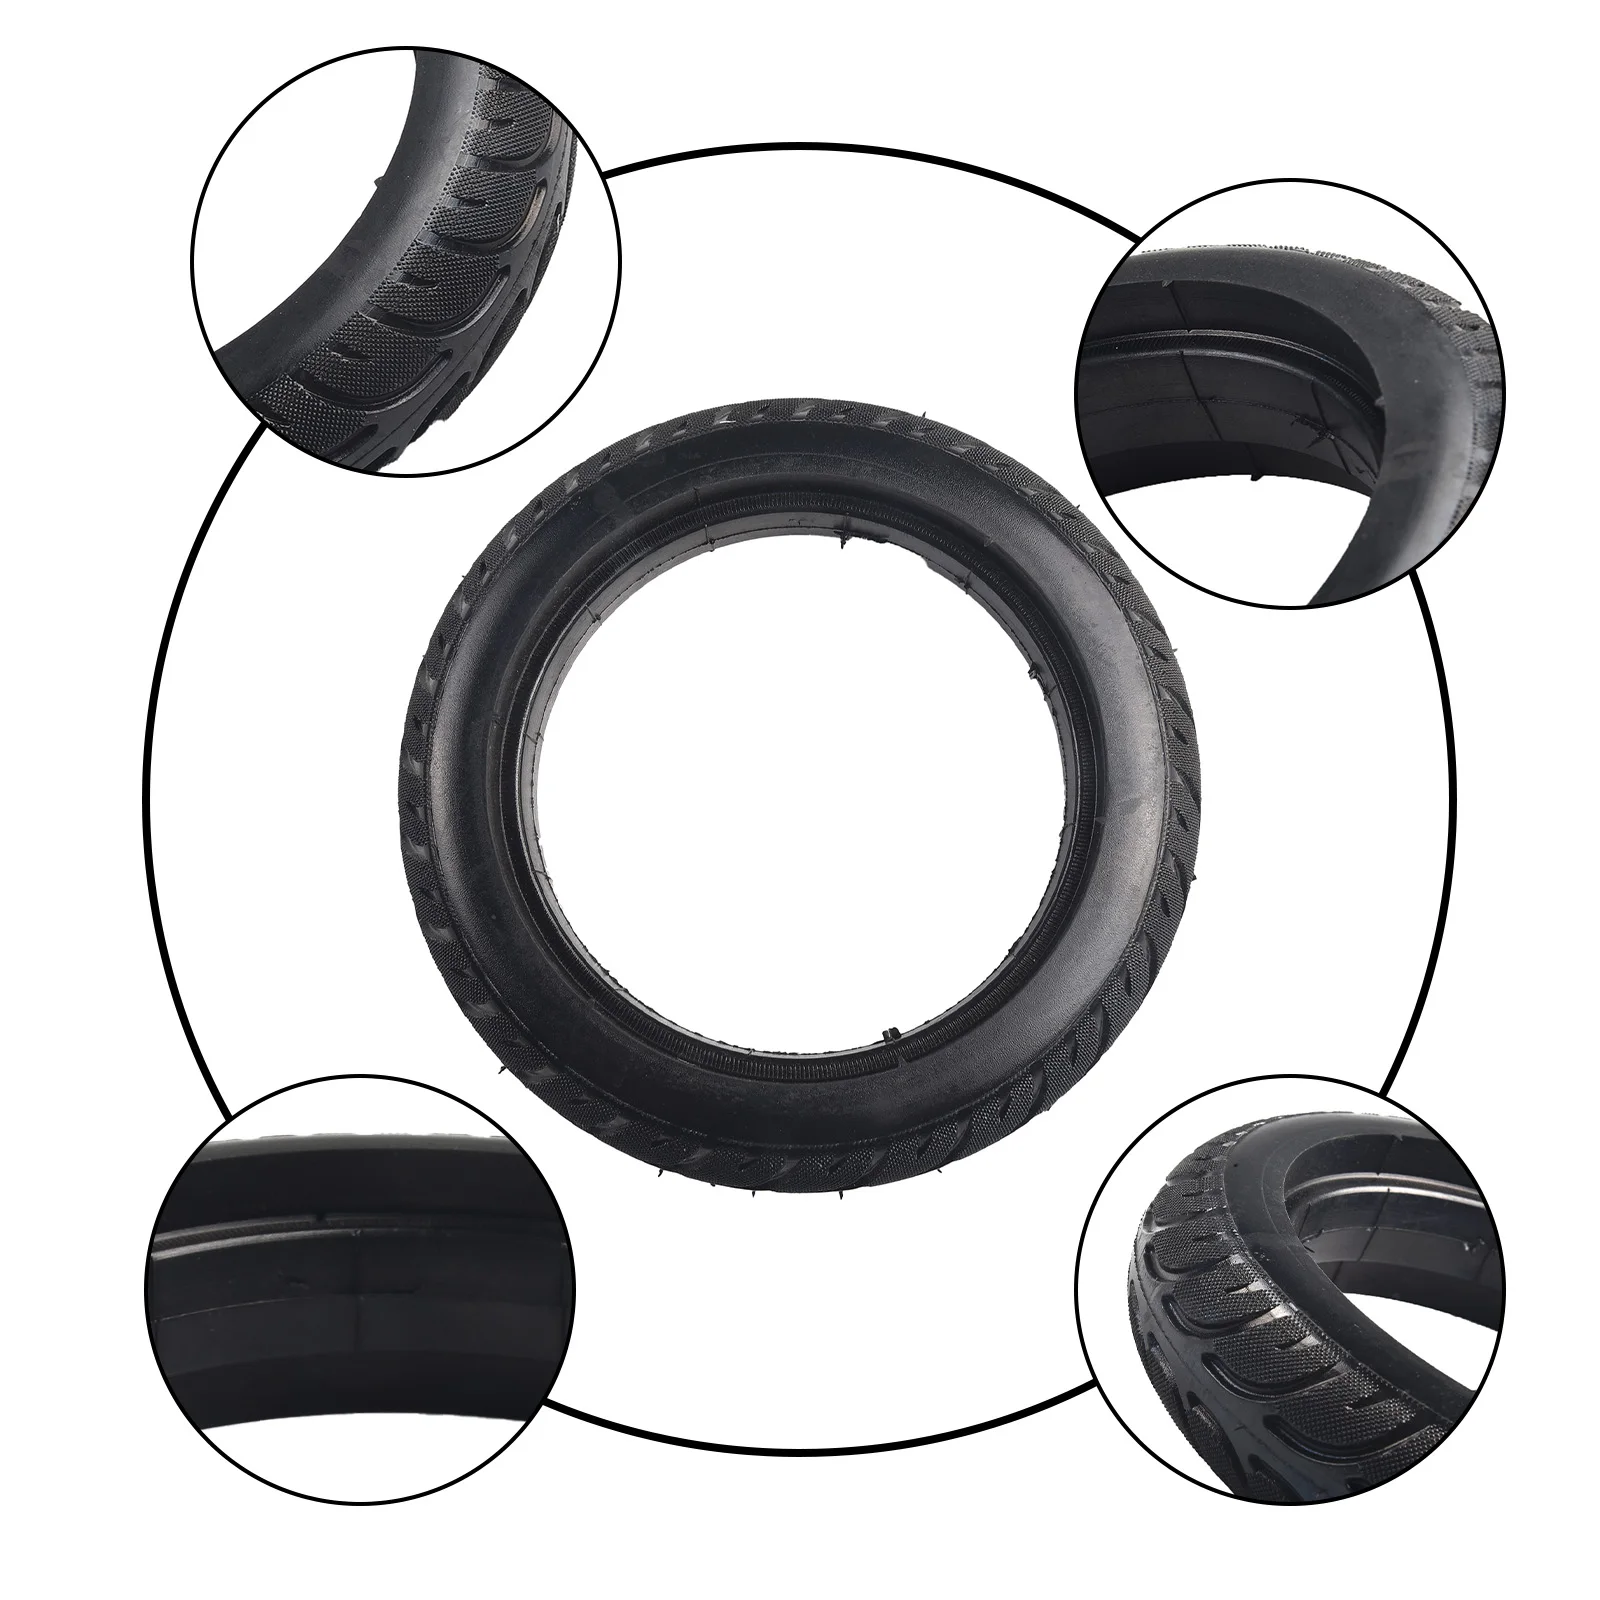  электрический велосипед камера резиновая шина черная электрическая внешняя диаметр 190 мм устойчивая к проколам резина скутера диаметр обода 140 мм